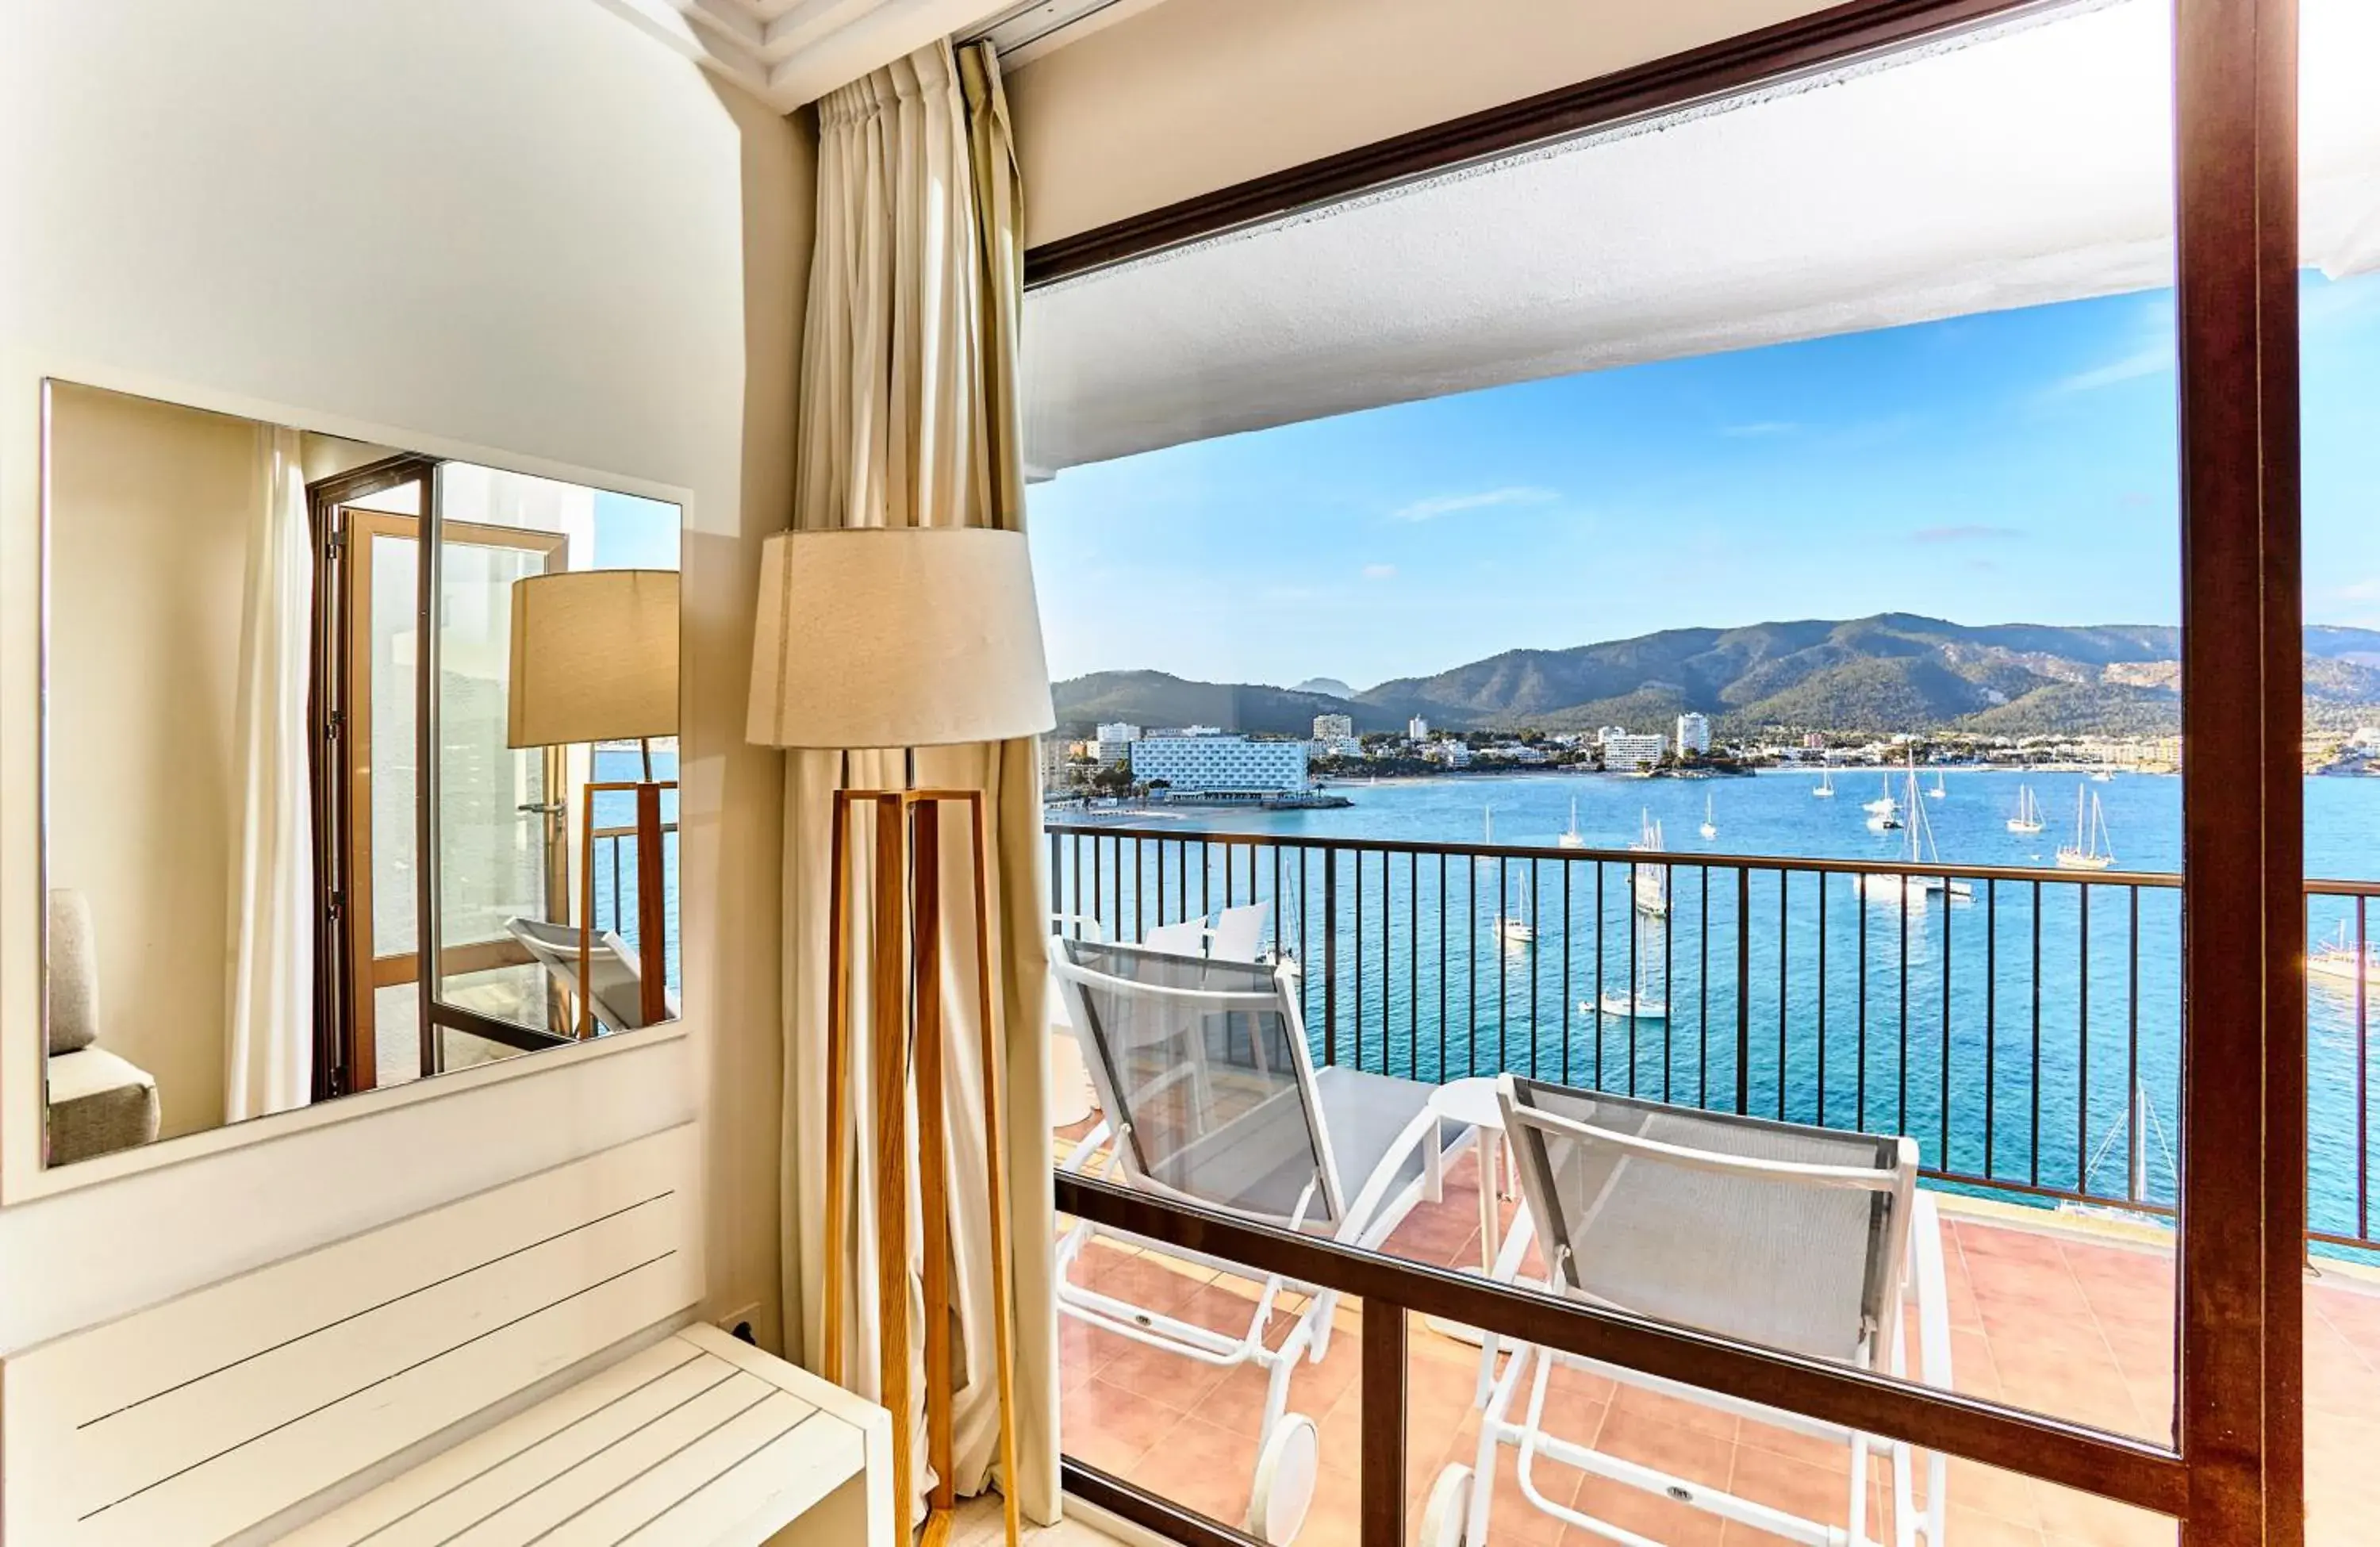 Sea view in Leonardo Royal Hotel Mallorca